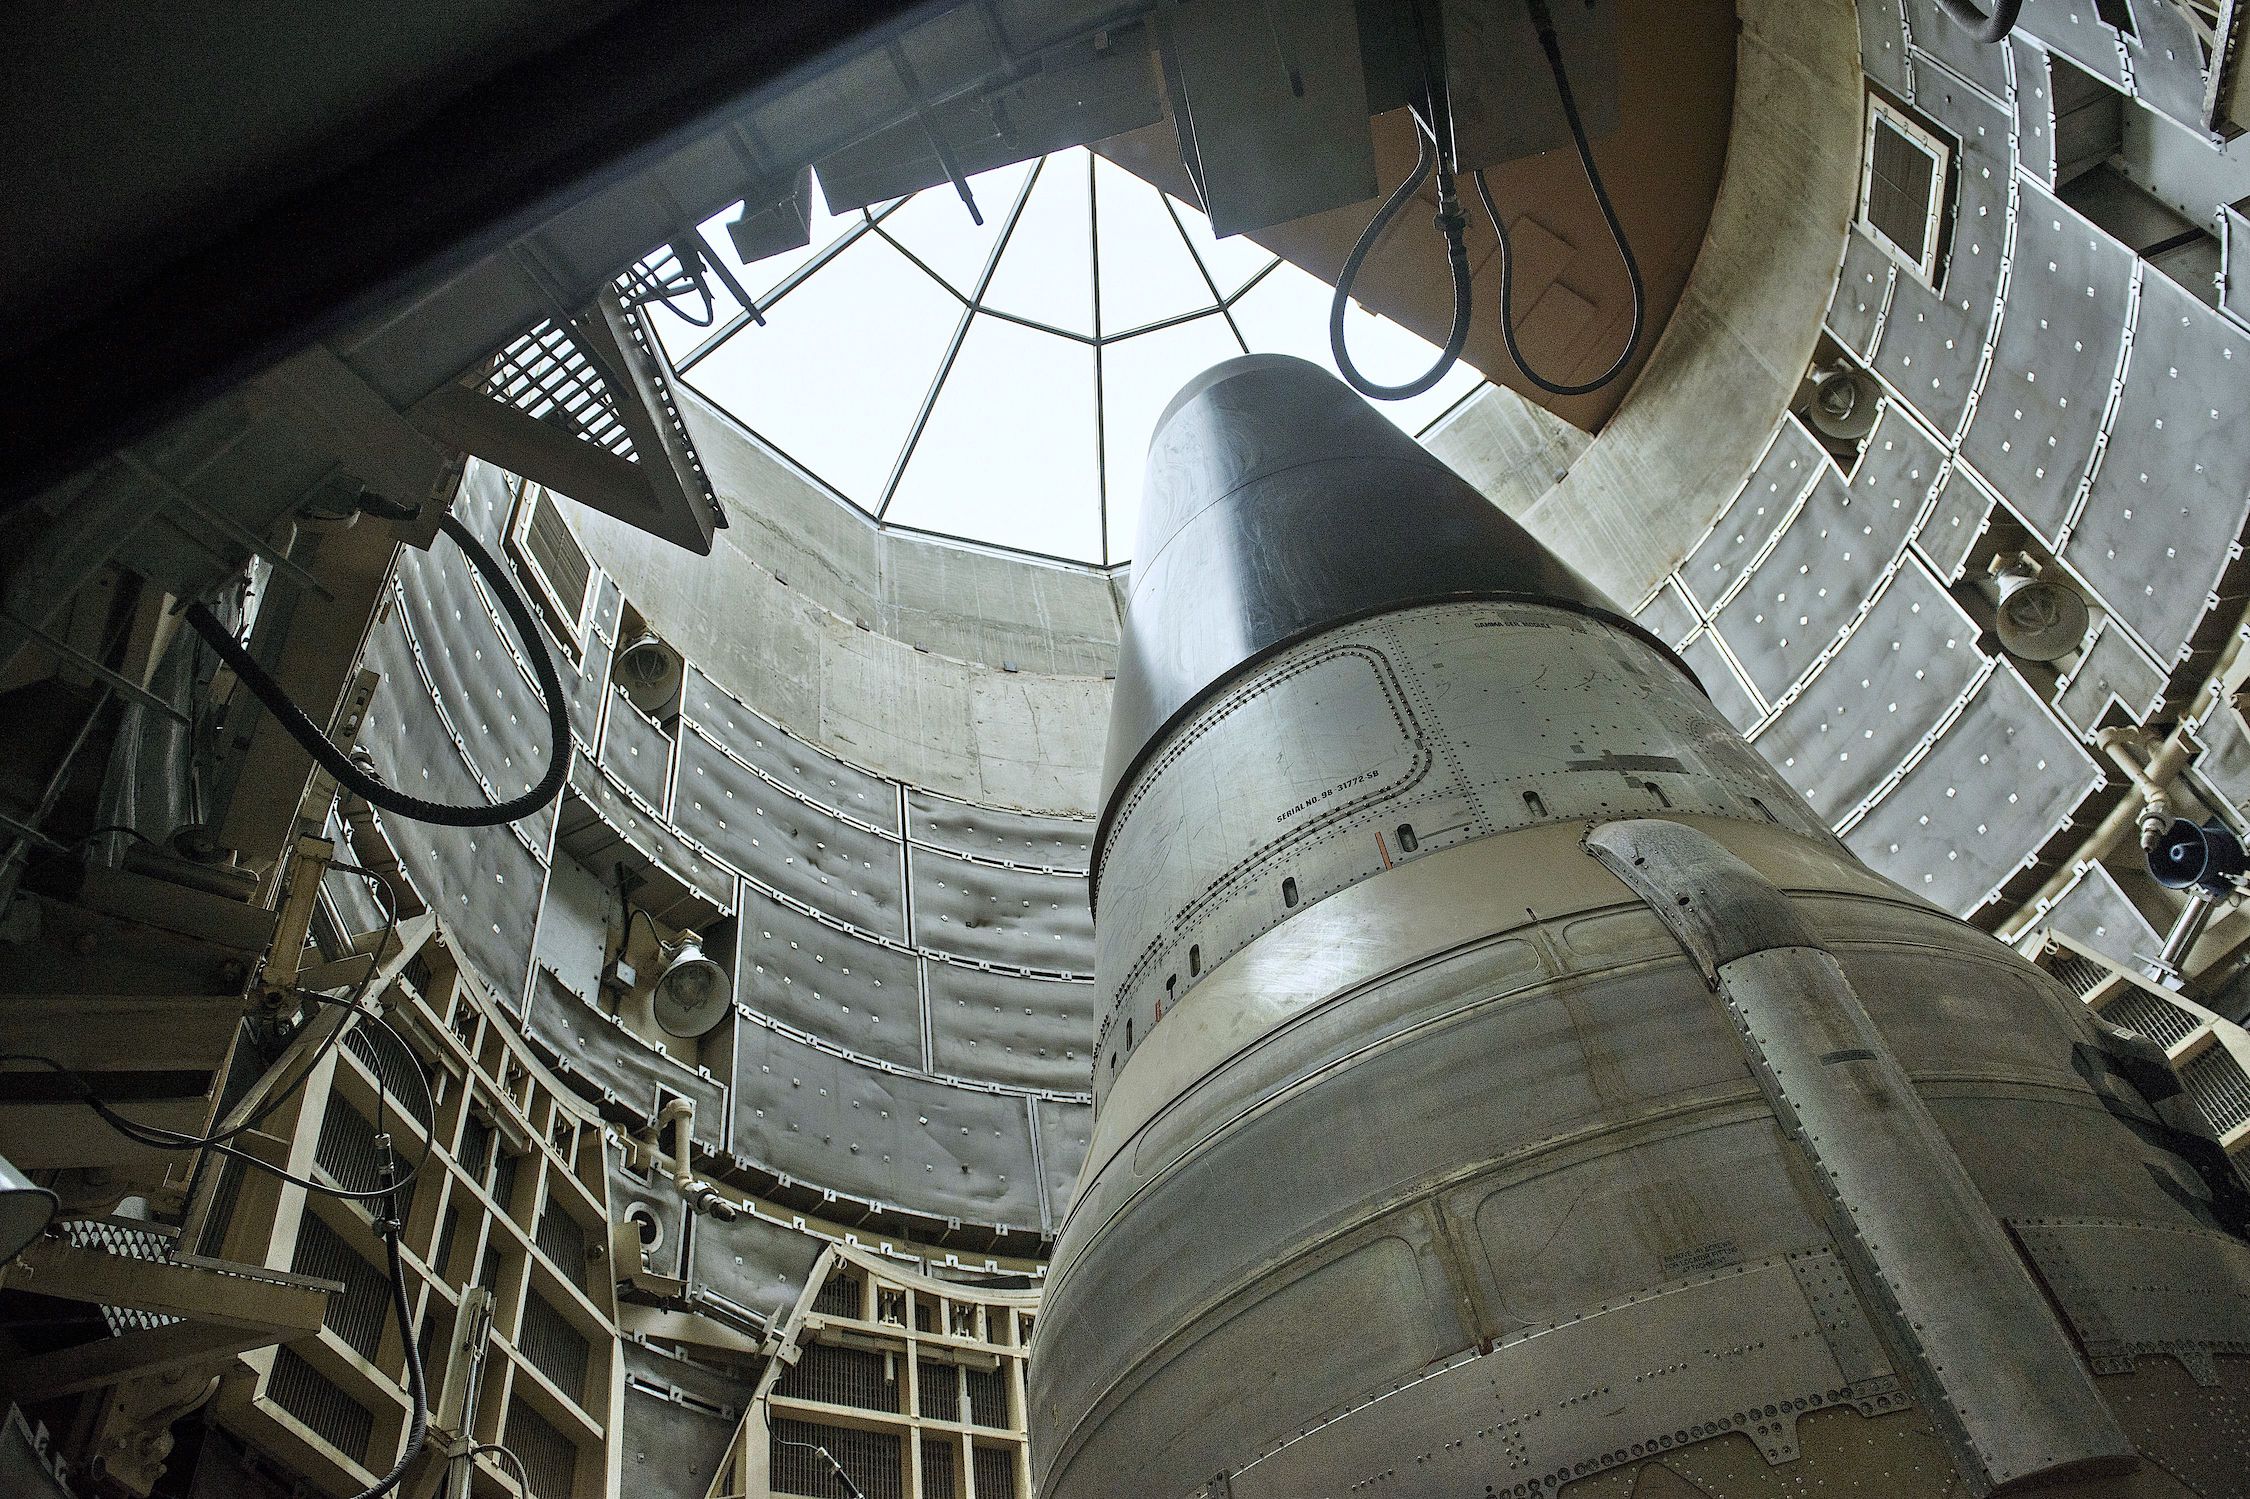 Một ICMB tên lửa hạt nhân Titan II đã ngừng hoạt động được nhìn thấy trong một silo tại Bảo tàng Tên lửa Titan ở Green Valley, Arizona, vào ngày 12 tháng 5 năm 2015. (Ảnh Brendan Smialowski / AFP / Getty)